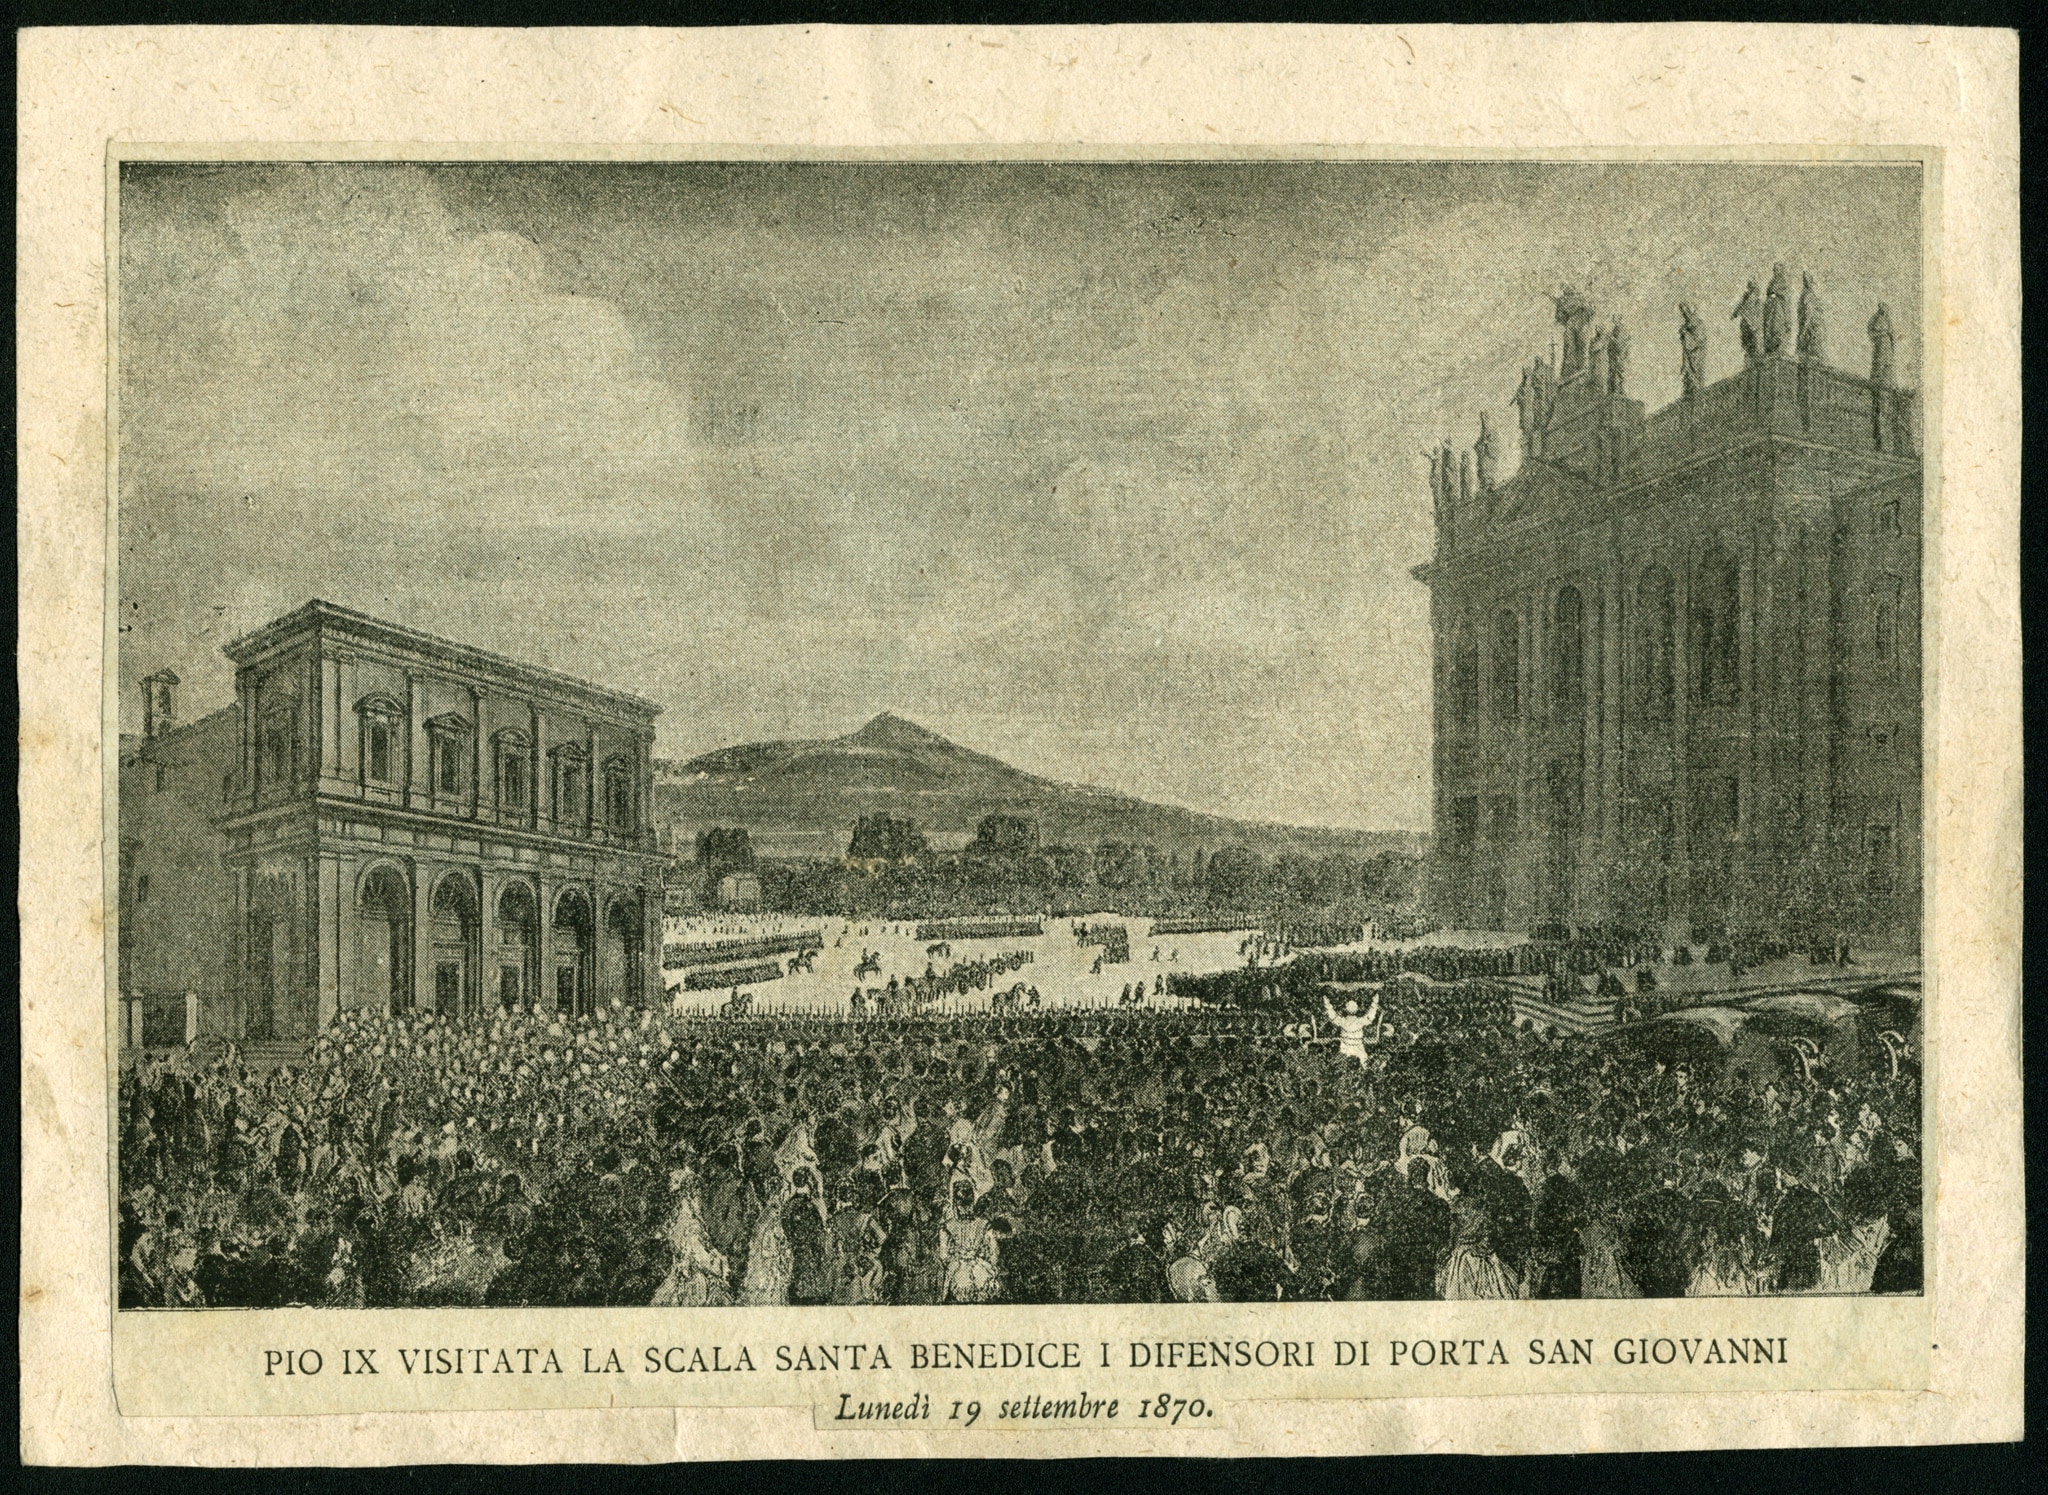 Incisione raffigurante Pio IX che visita la Scala Santa e benedice i difensori di Porta San Giovanni il 19 settembre 1870